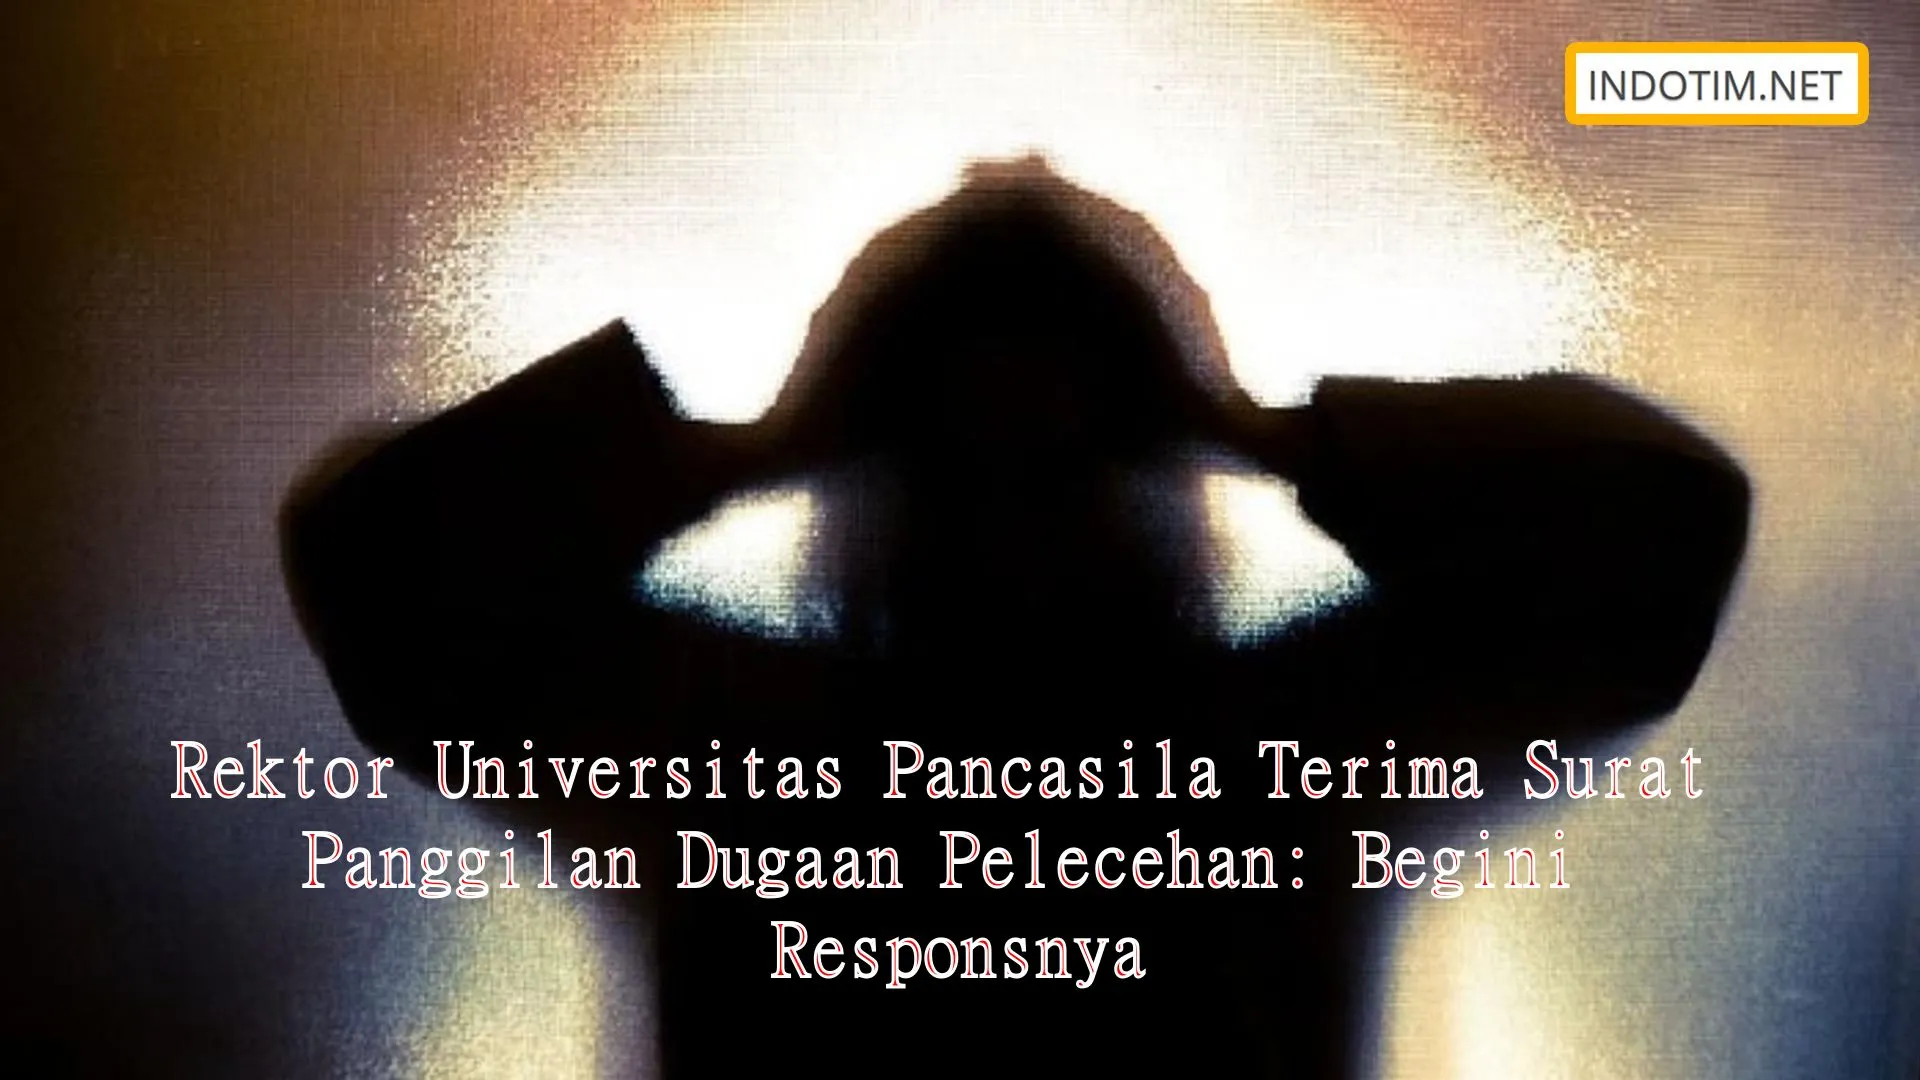 Rektor Universitas Pancasila Terima Surat Panggilan Dugaan Pelecehan: Begini Responsnya